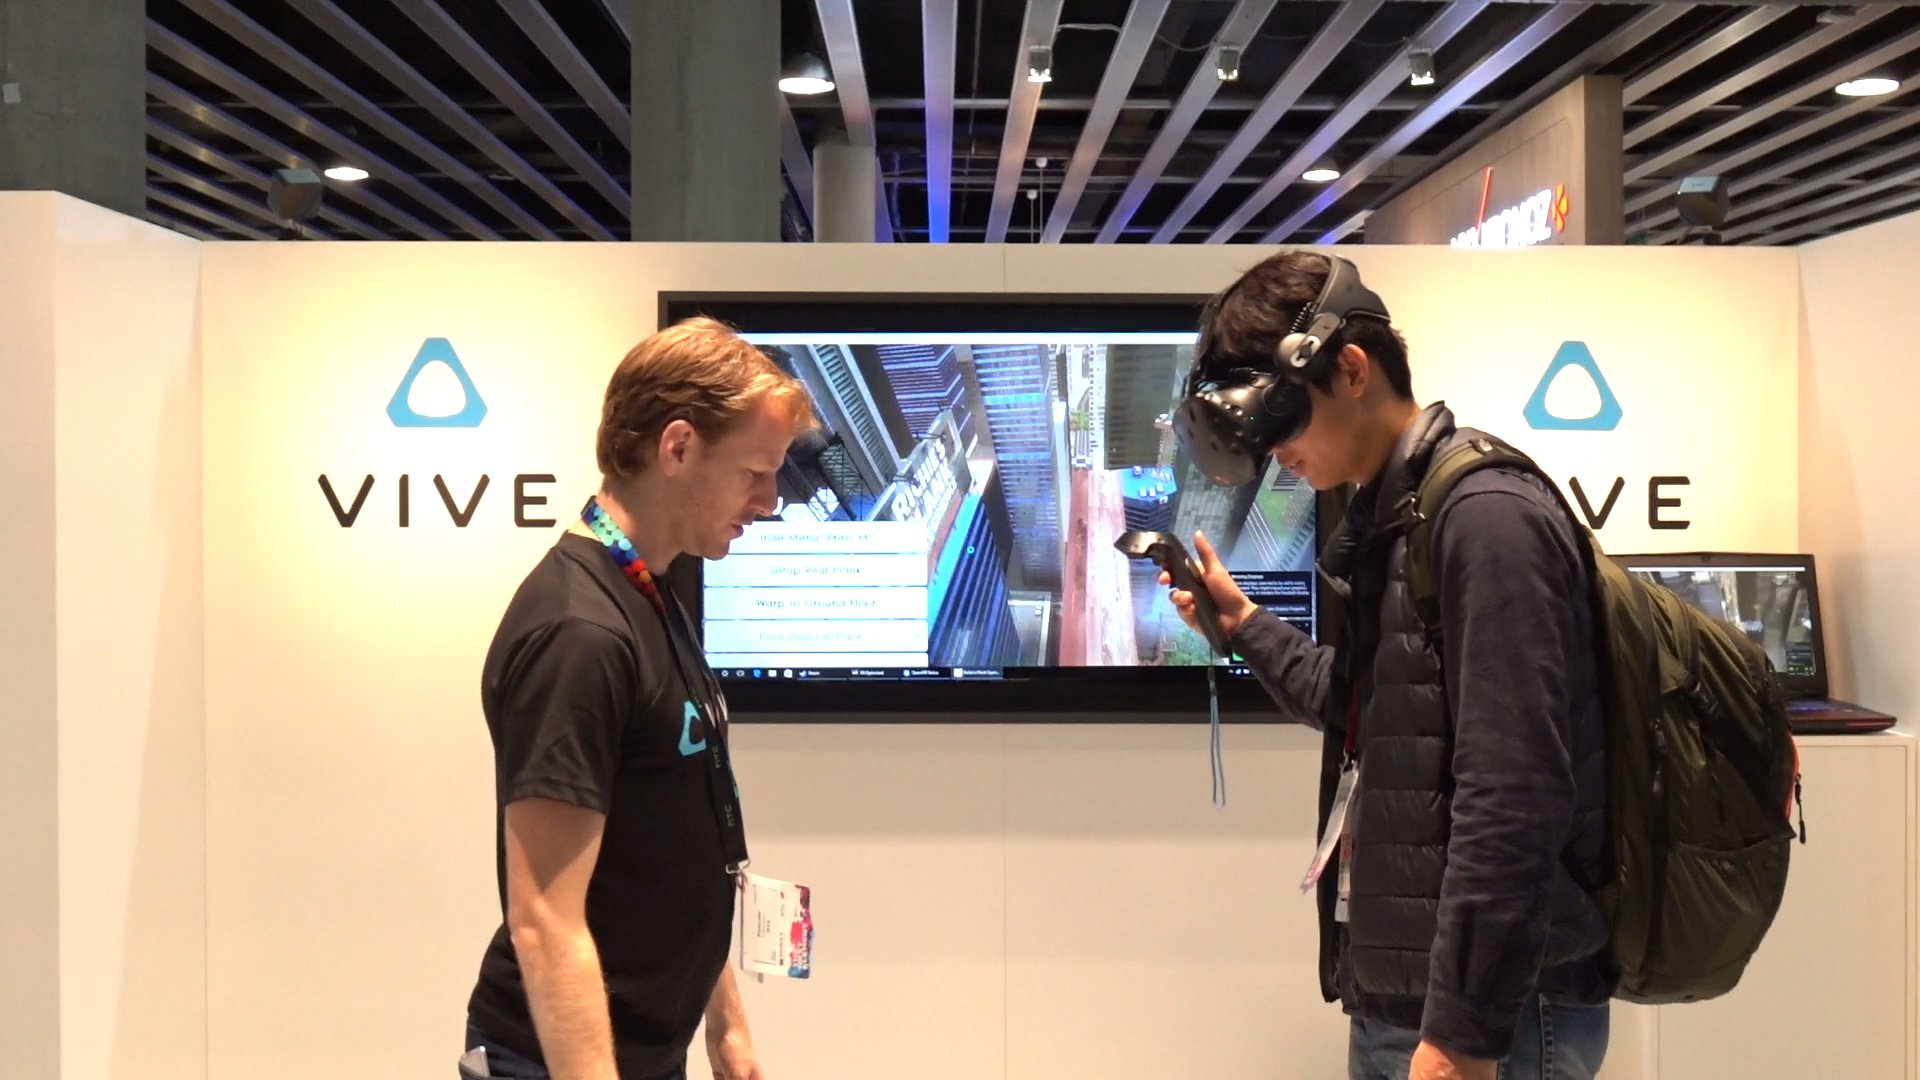 VÍDEO: Una experiencia virtual, coches conectados, impresoras 3D y cámaras clon en el Mobile